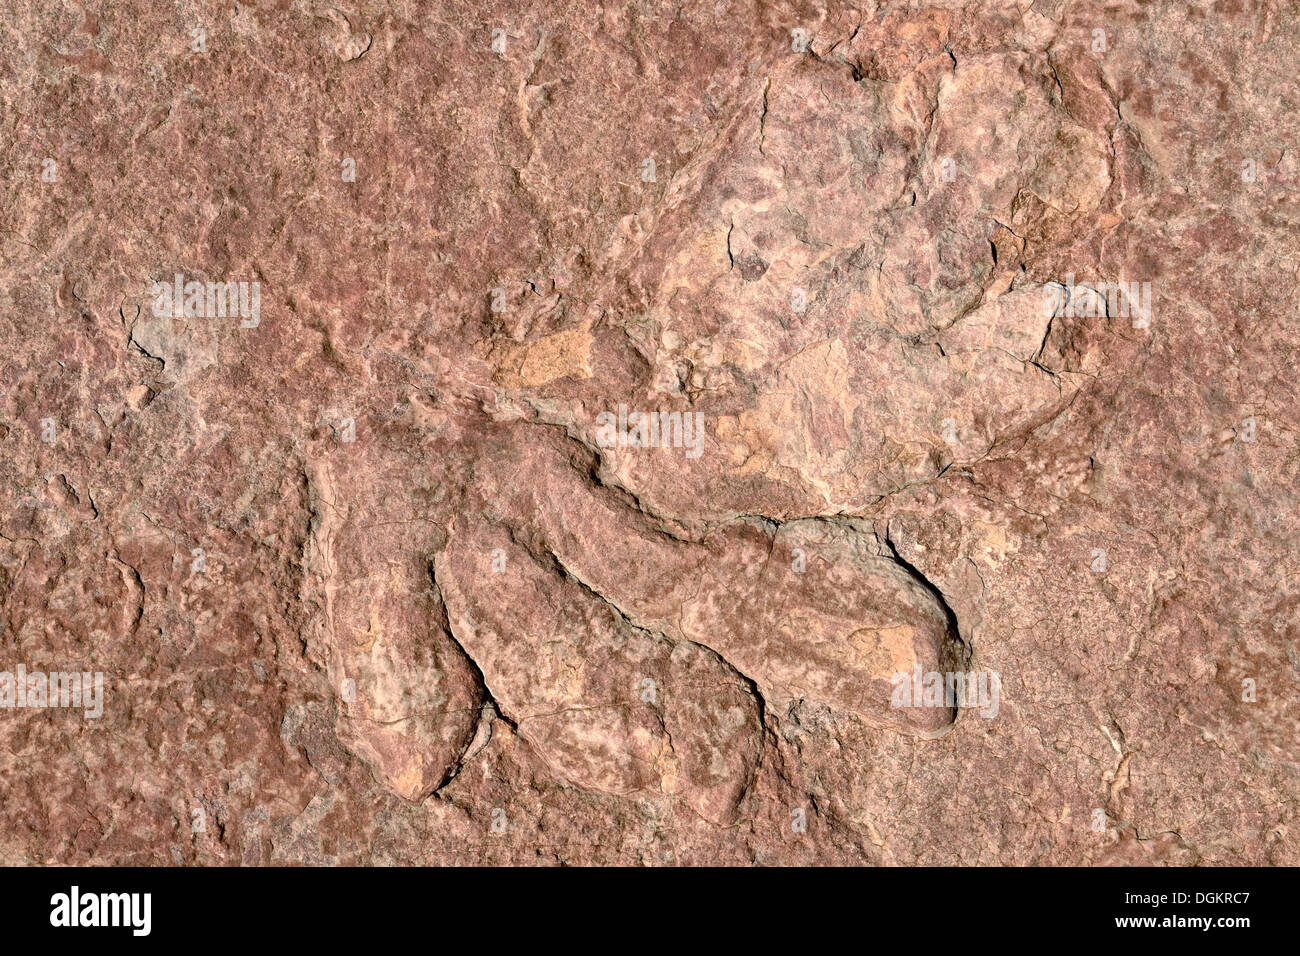 Versteinerte Fußabdrücke eines Dinosauriers, Dilophosaurus, erhalten teilweise, etwa 170 Millionen Jahren Jurassic Alter Navajo Sandstein Stockfoto